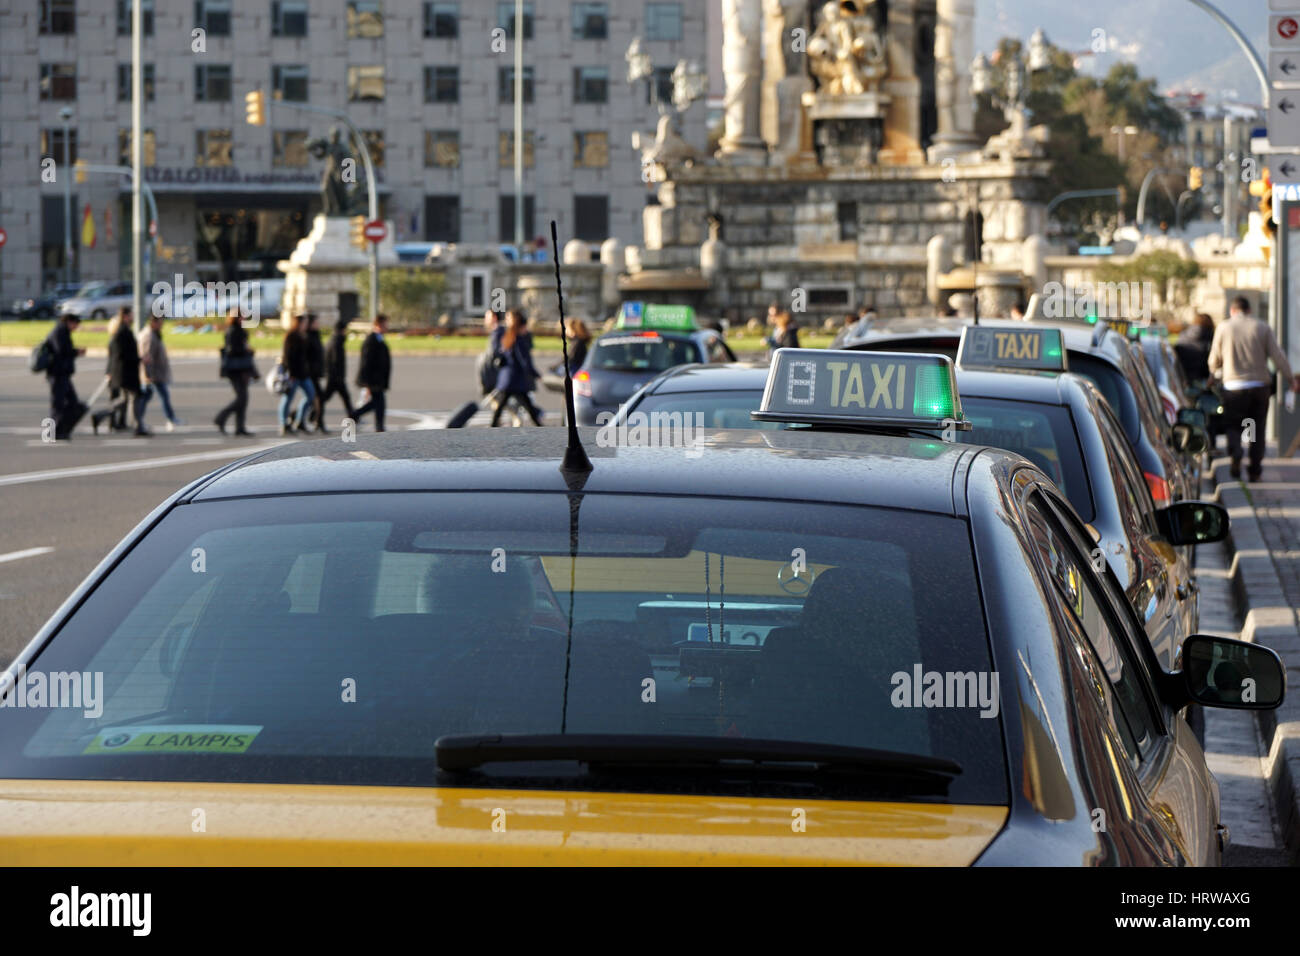 Barcelone, Espagne - 29 févr., 2016 : rangée de taxis attendent des passagers à Plaça d'Espagna. Banque D'Images